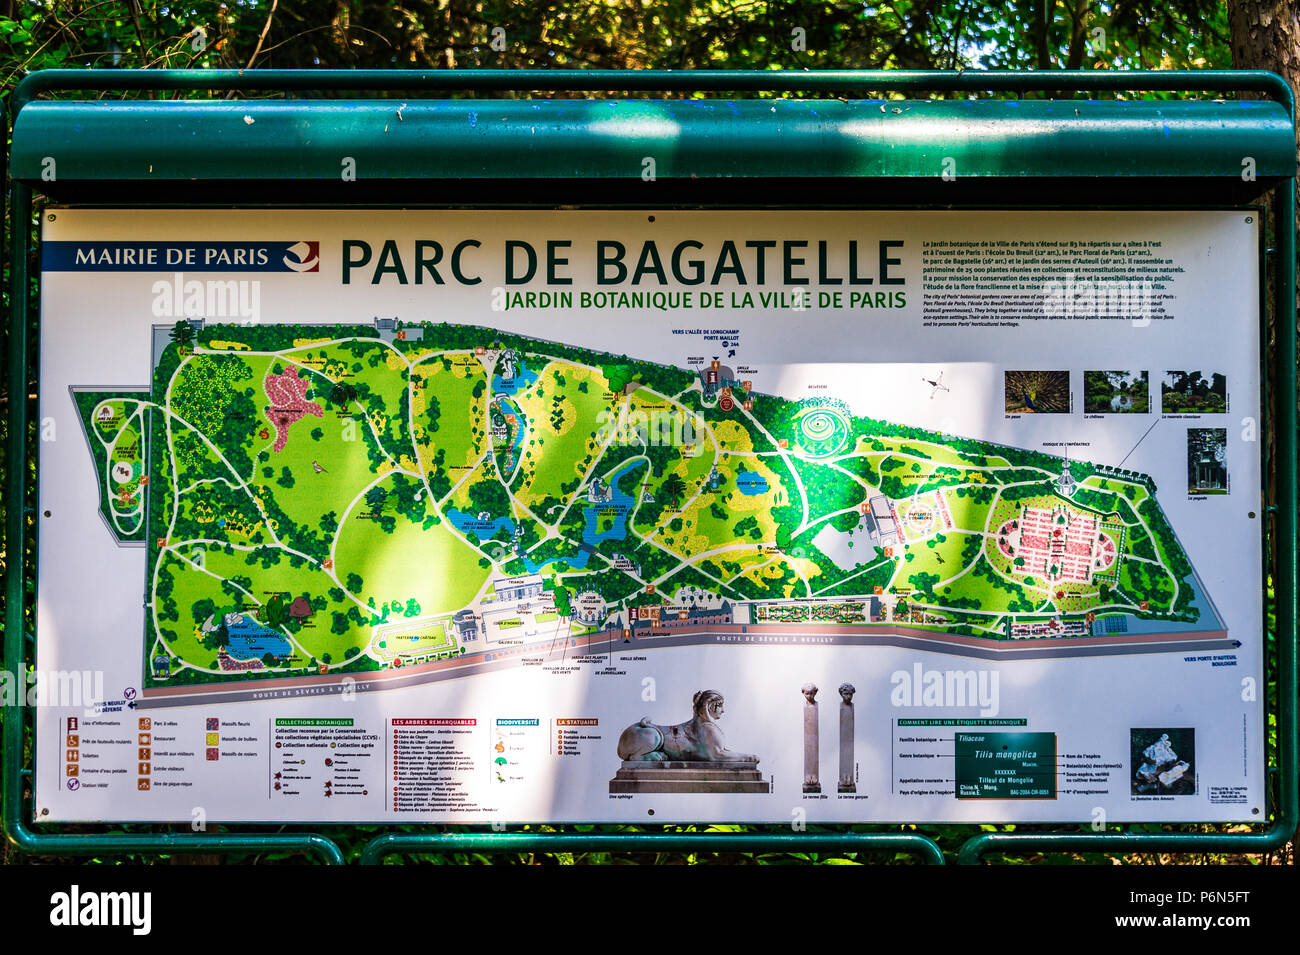 Une carte visuelle dans le parc de Bagatelle à Paris, France Photo Stock -  Alamy